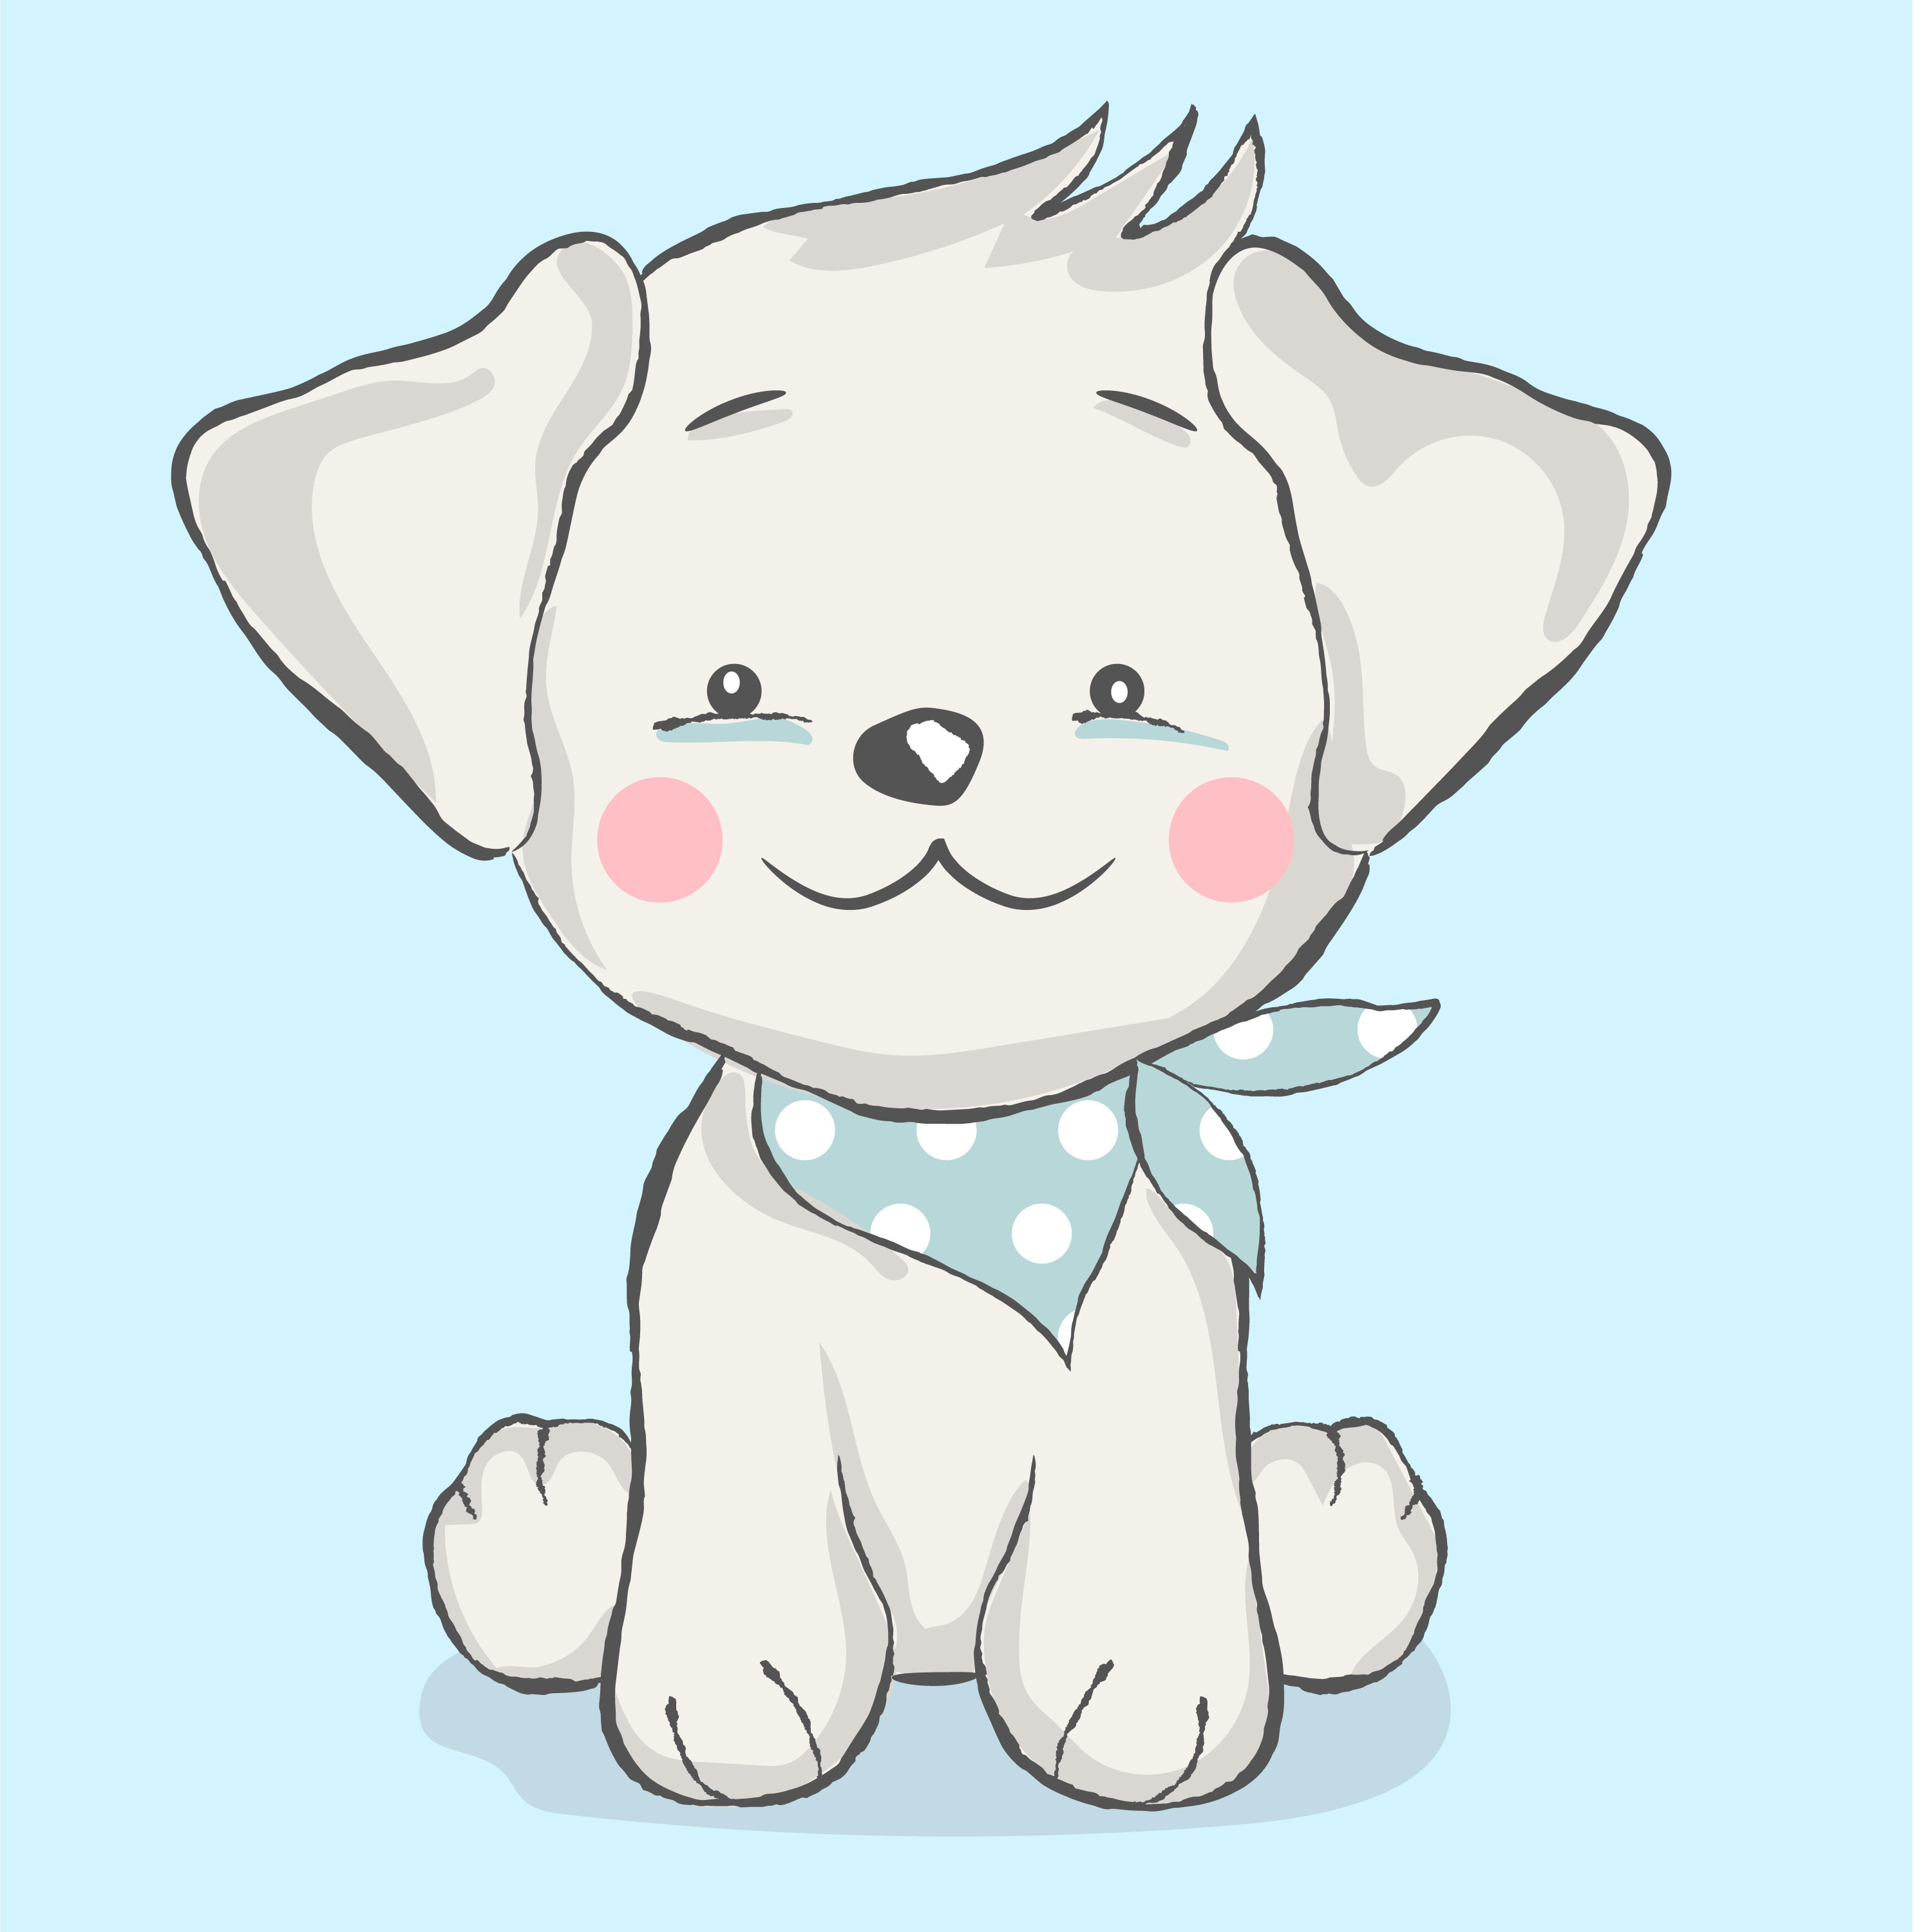 cute baby dog cartoon style 621877 Vector Art at Vecteezy